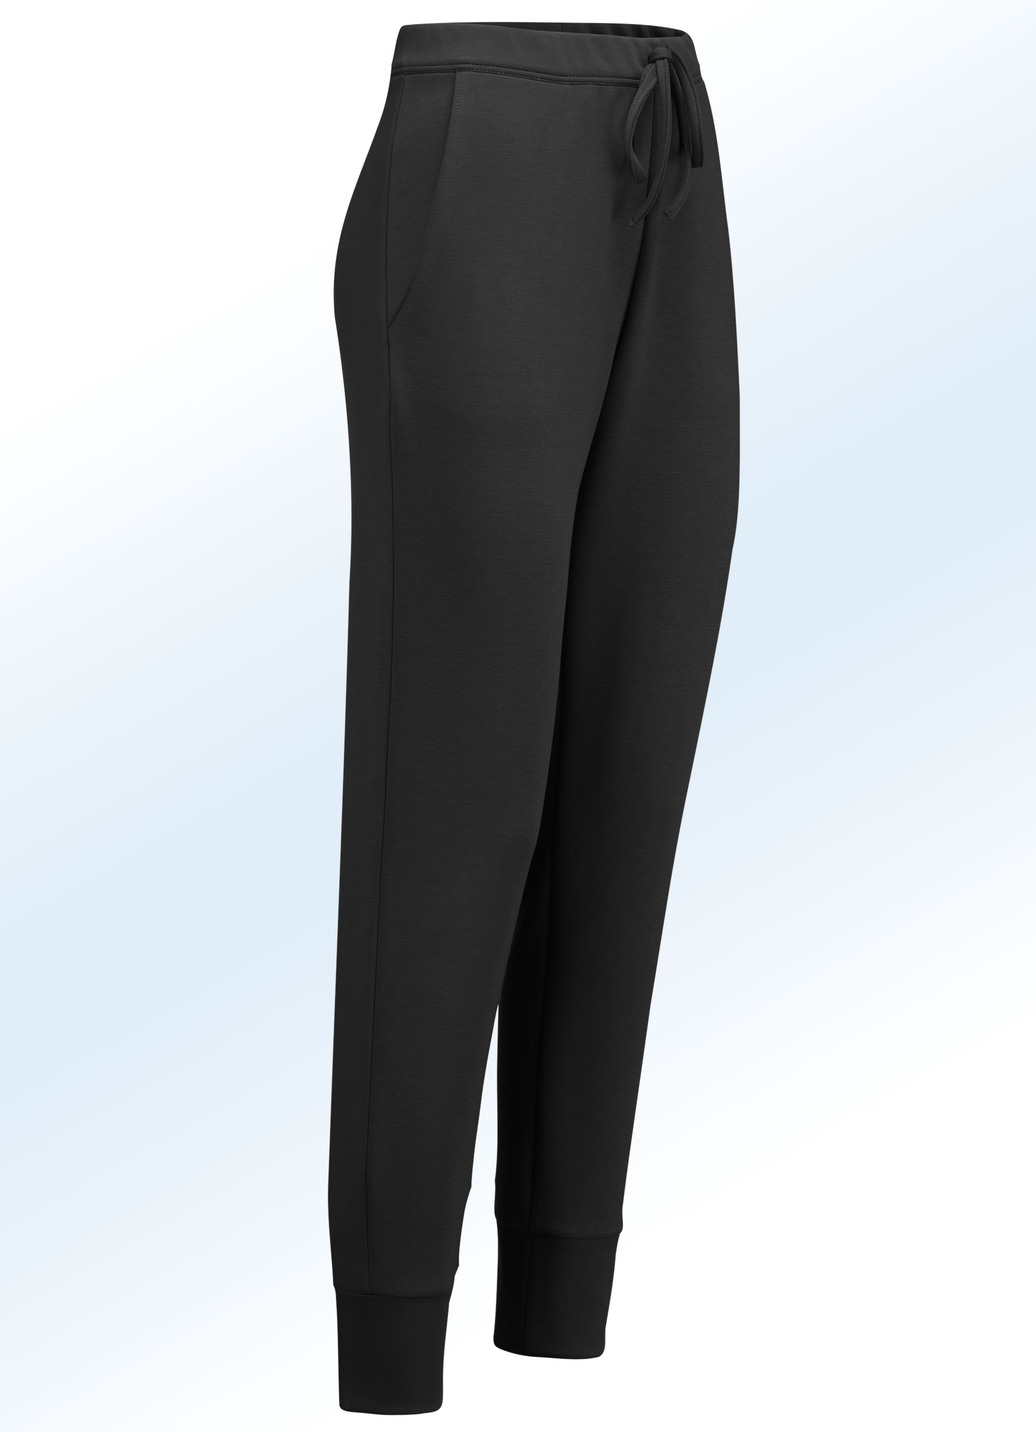 Jerseyhose im stadttauglichen Joggpant-Style, Schwarz, Größe 25 von KLAUS MODELLE